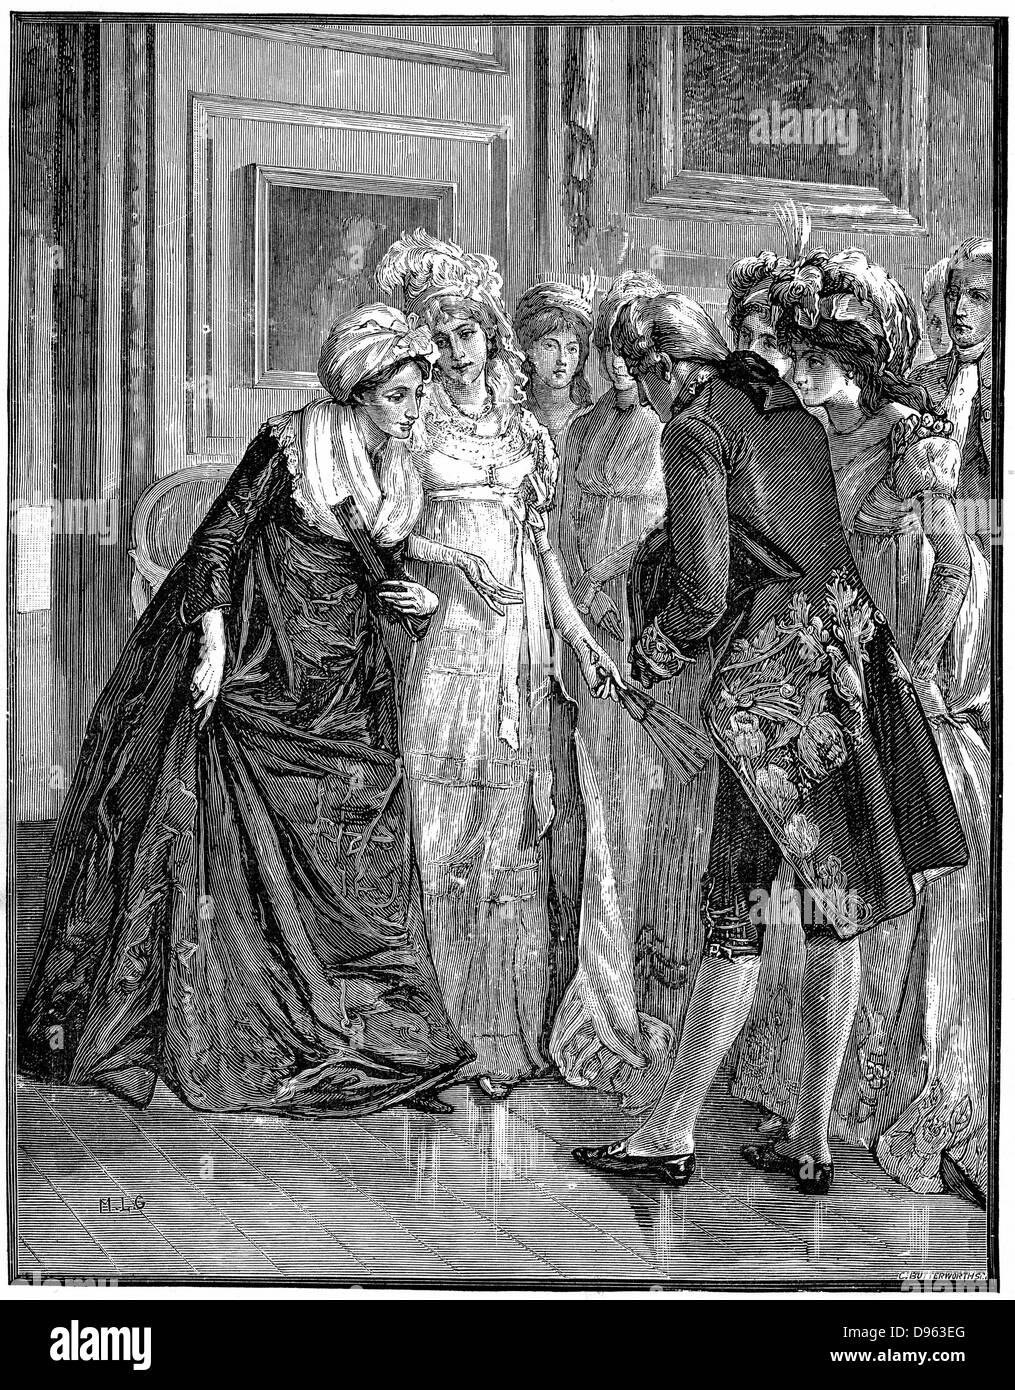 Hannah più (1745-1833) religione inglese scrittore e drammaturgo, e membro della calza blu cerchio di intelligent donne istruite, introdotto alla società dalla Duchessa di Gloucester. Incisione su legno. Foto Stock